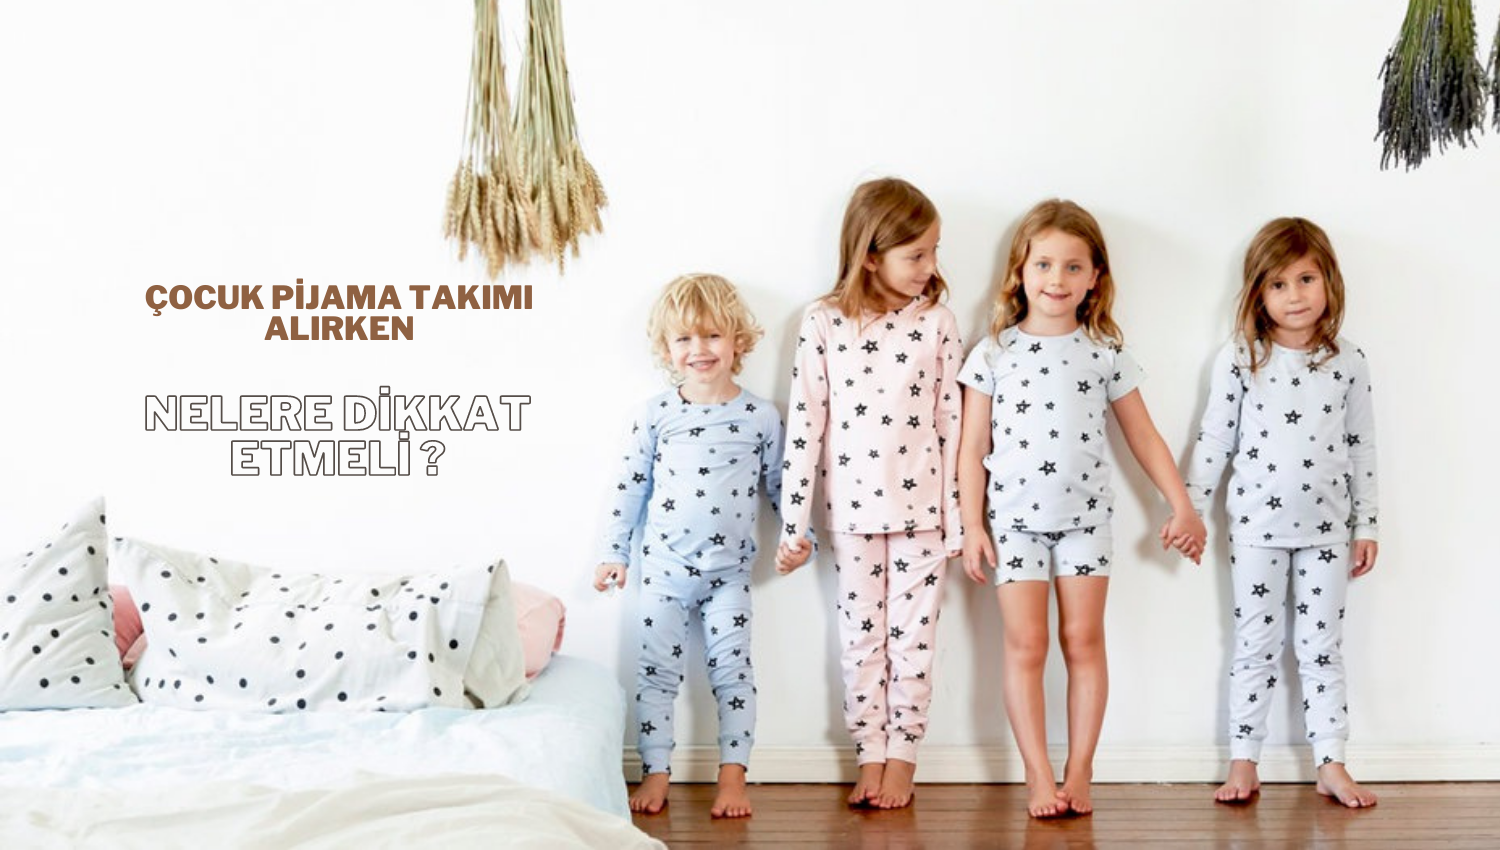 Çocuk Pijama Takımı Alırken Nelere Dikkat Edilmeli?